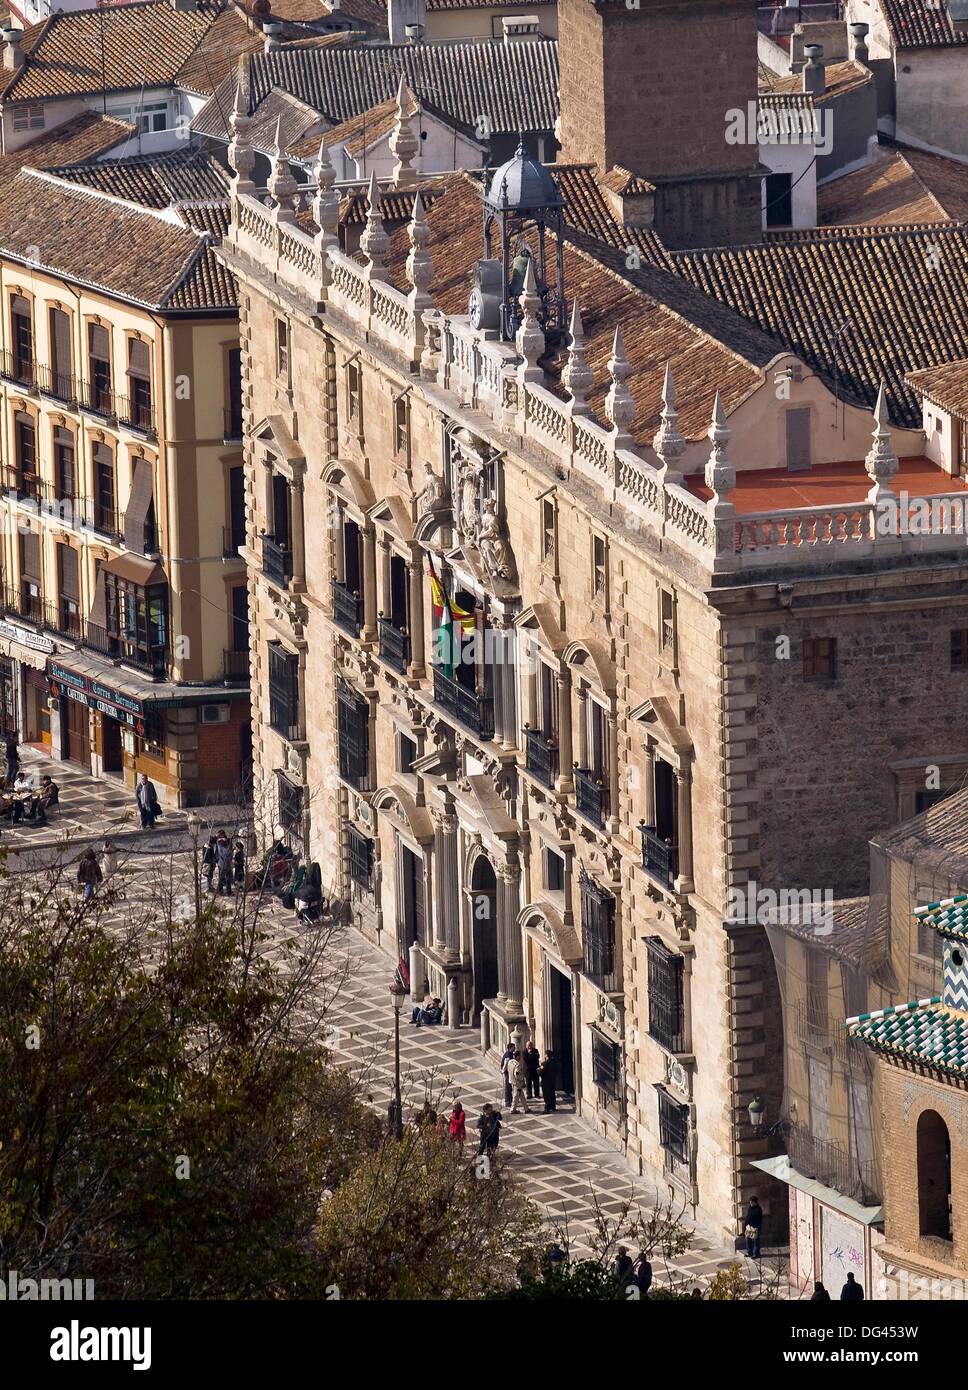 Edificio de la Real Chancillería, de estilo renacentista (manierismo), siglo XVI, situado en la Plaza Nueva de Granada, sede Stock Photo